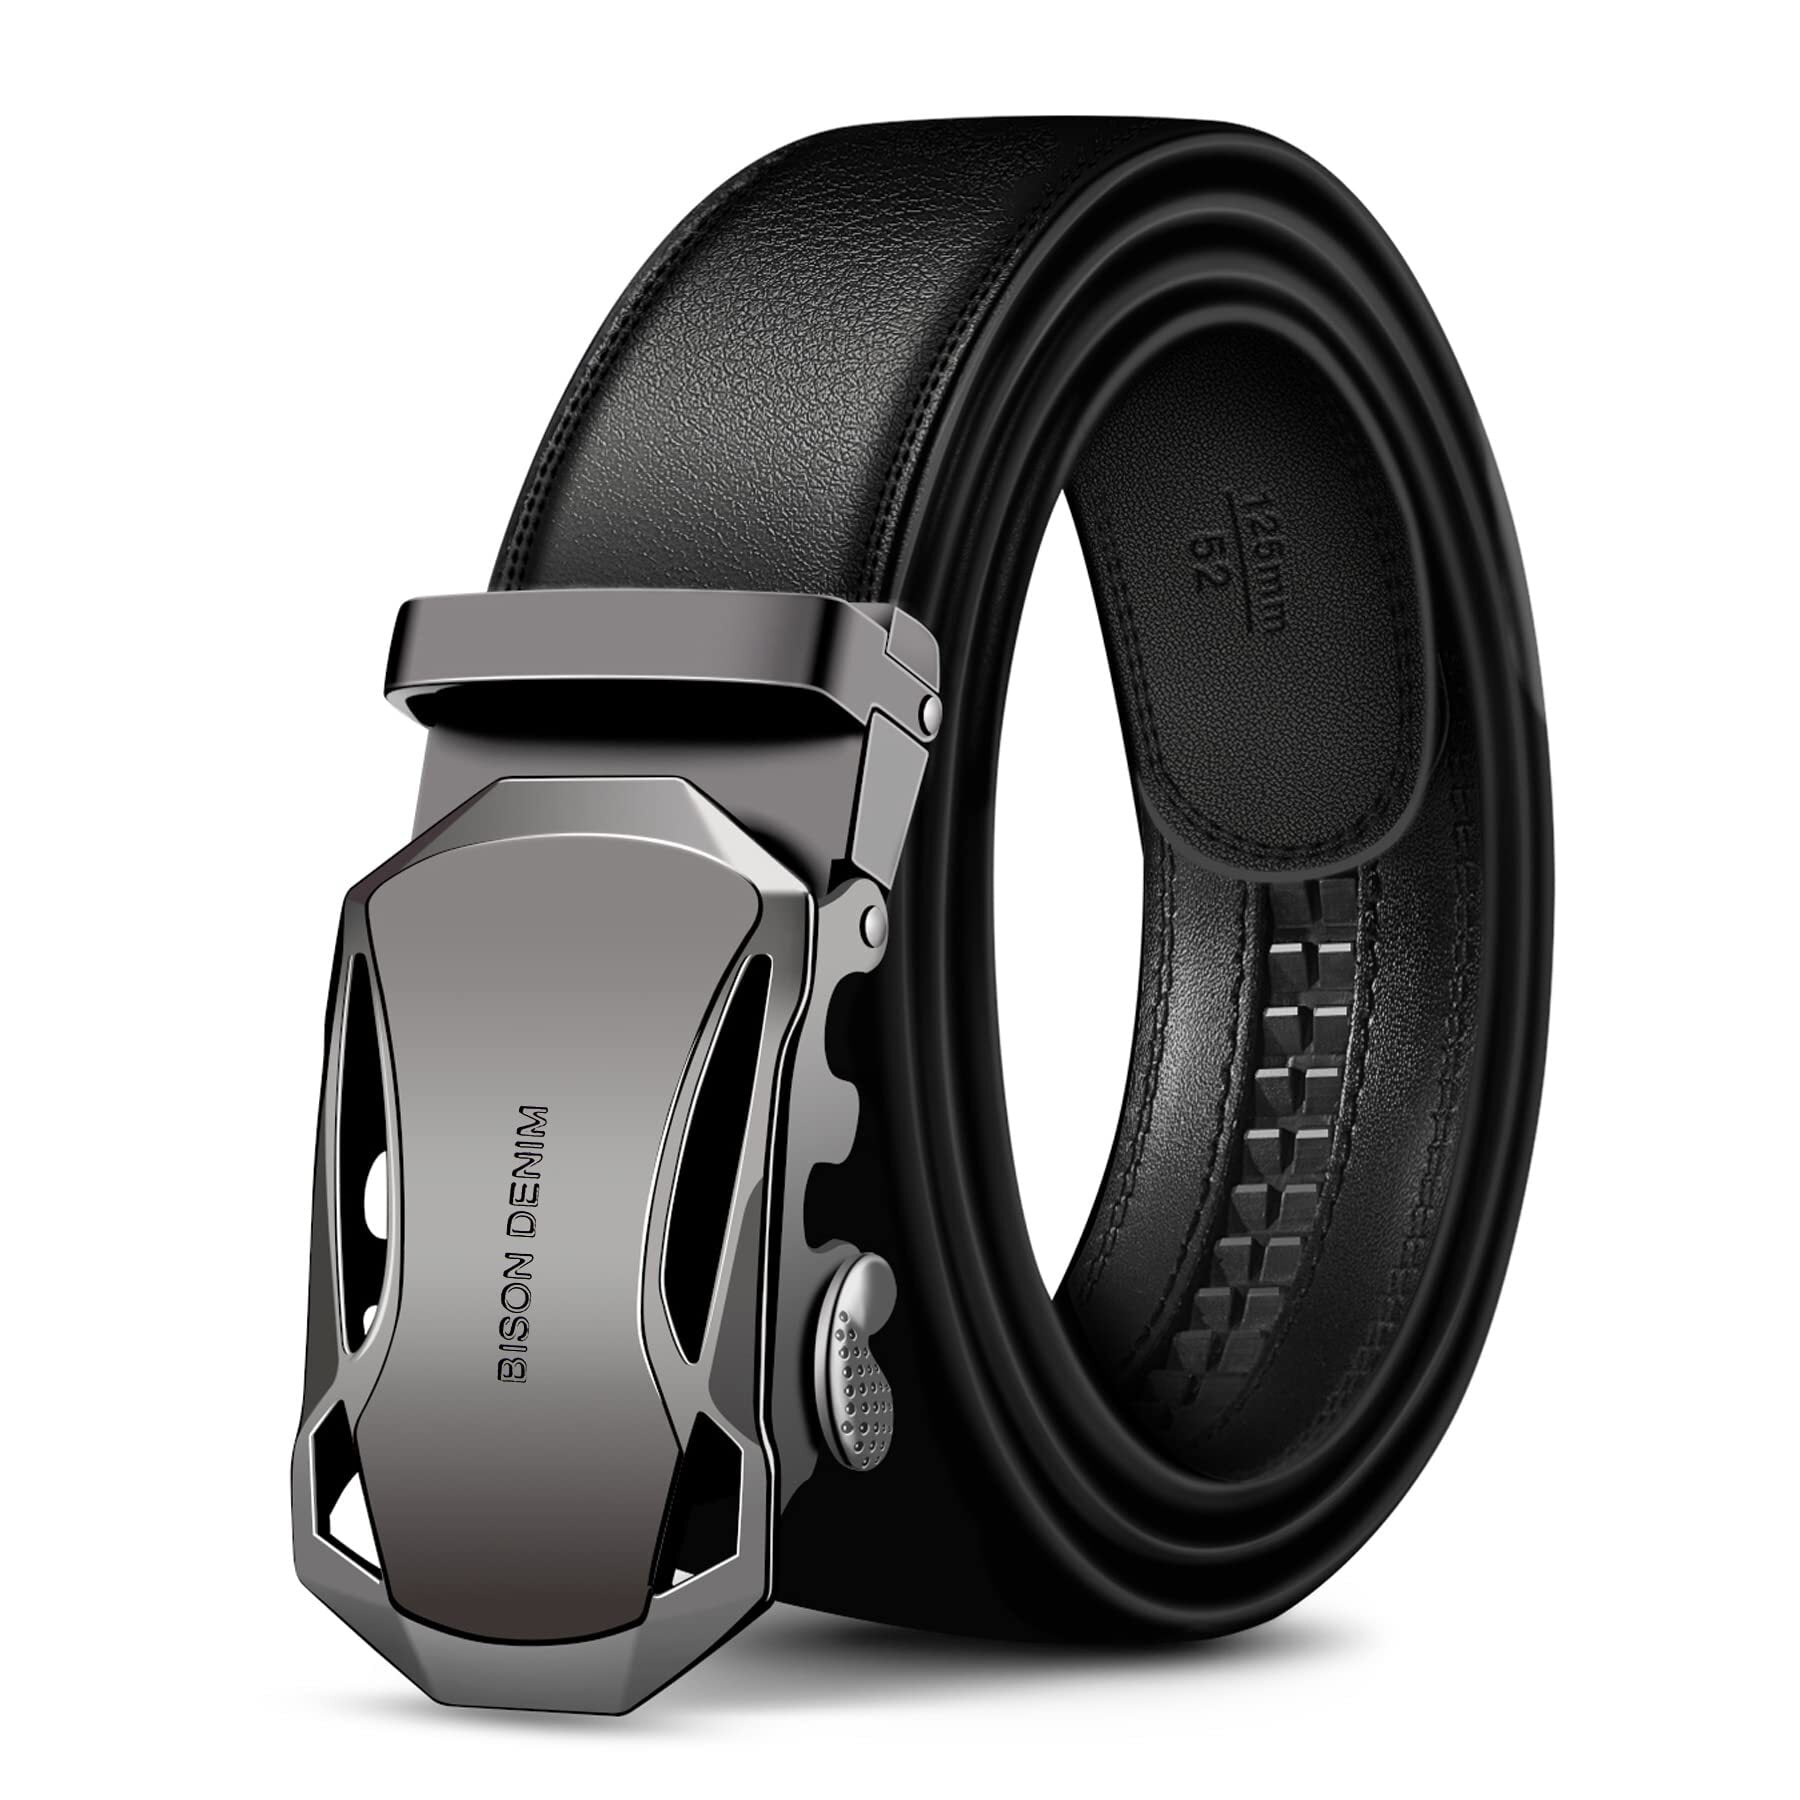 BISON DENIM Genuine Leather Ratchet Belt Belts Adjustable Automatic Buckle - Walmart.com